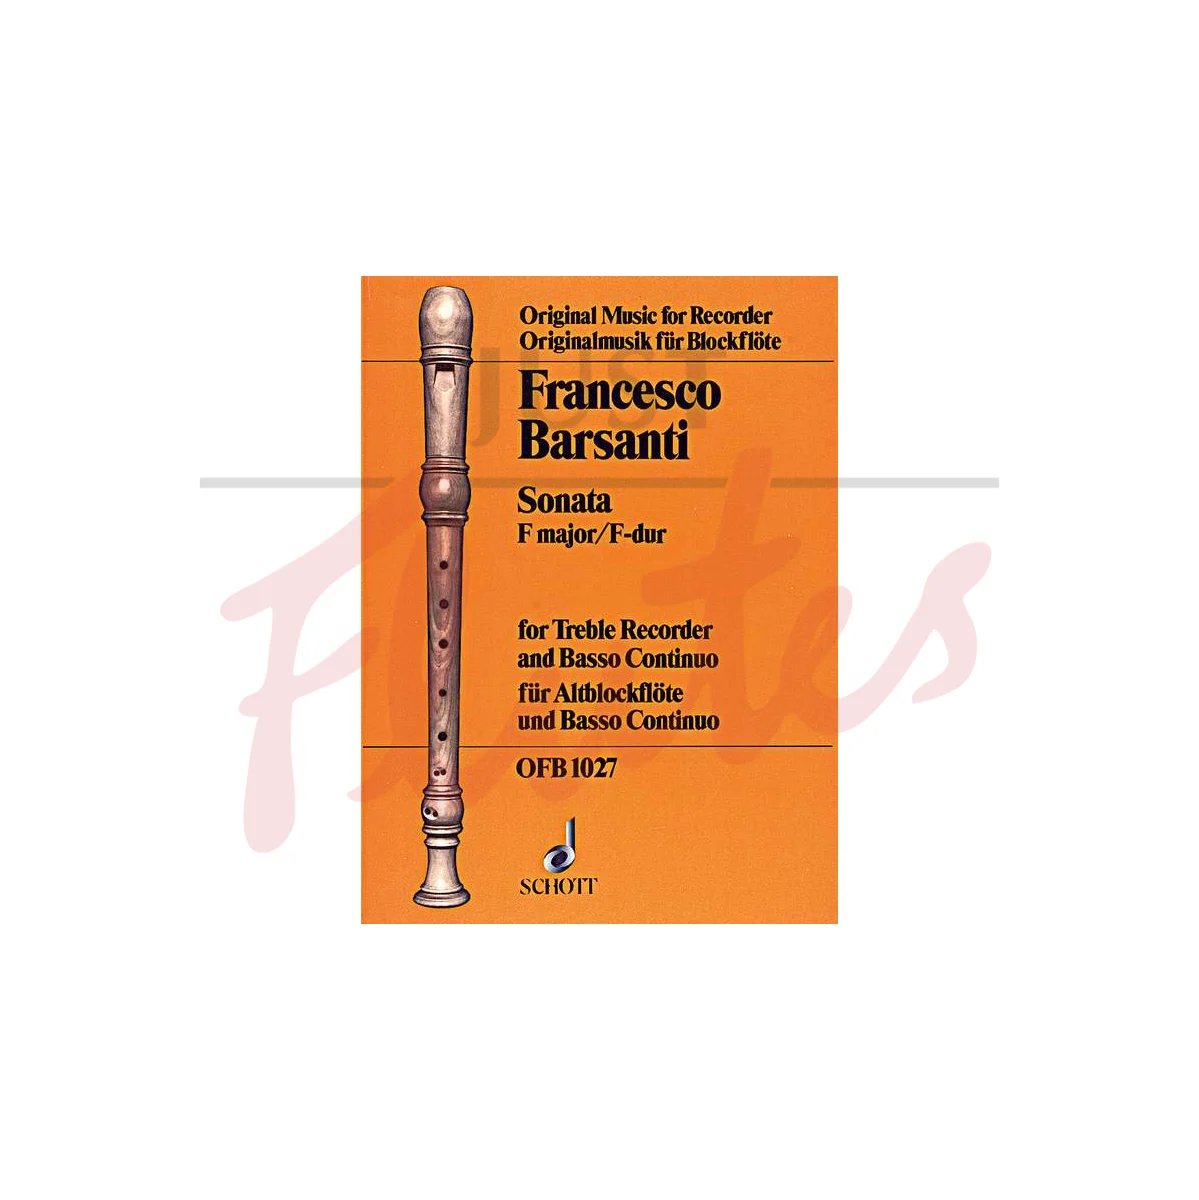 Sonata No. 5 in F major for Treble Recorder and Basso Continuo